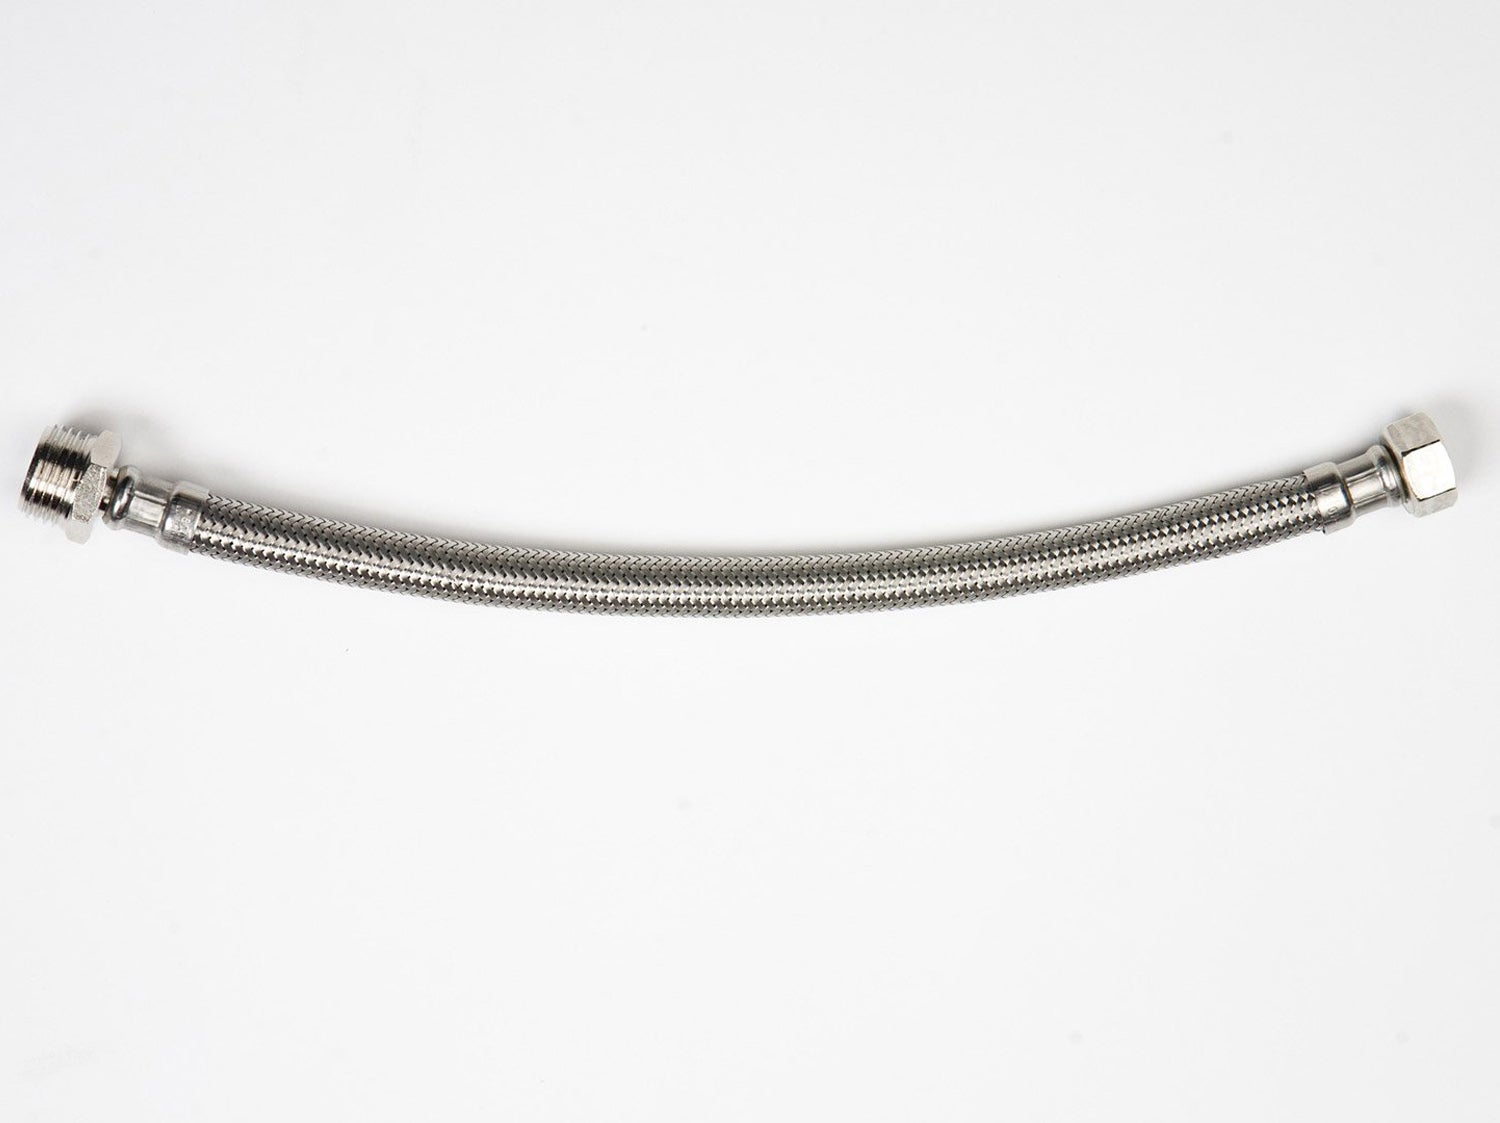 Tuyau blindé de 200 cm avec connexion de 2 x 1/2 pour leau potable Tuyau flexible avec tressage en acier inoxydable 